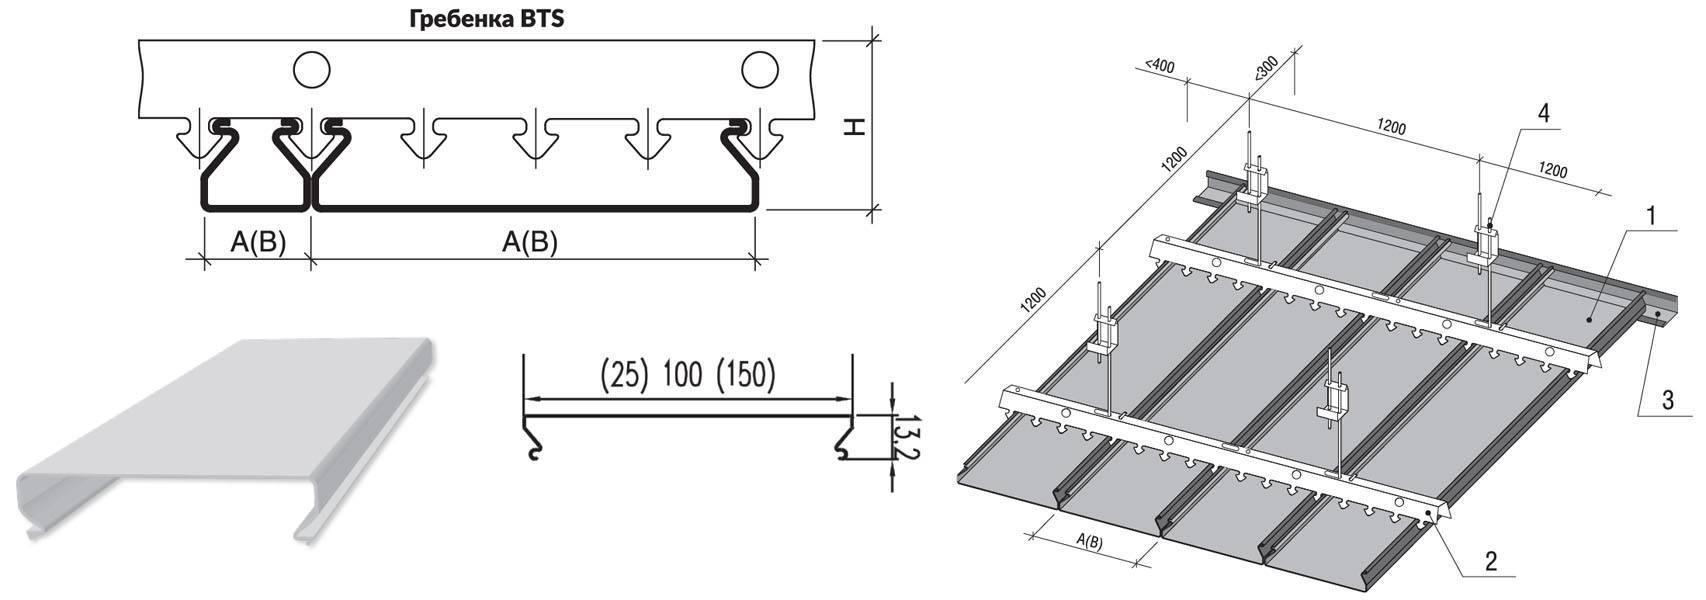 Инструкция по монтажу реечного потолка